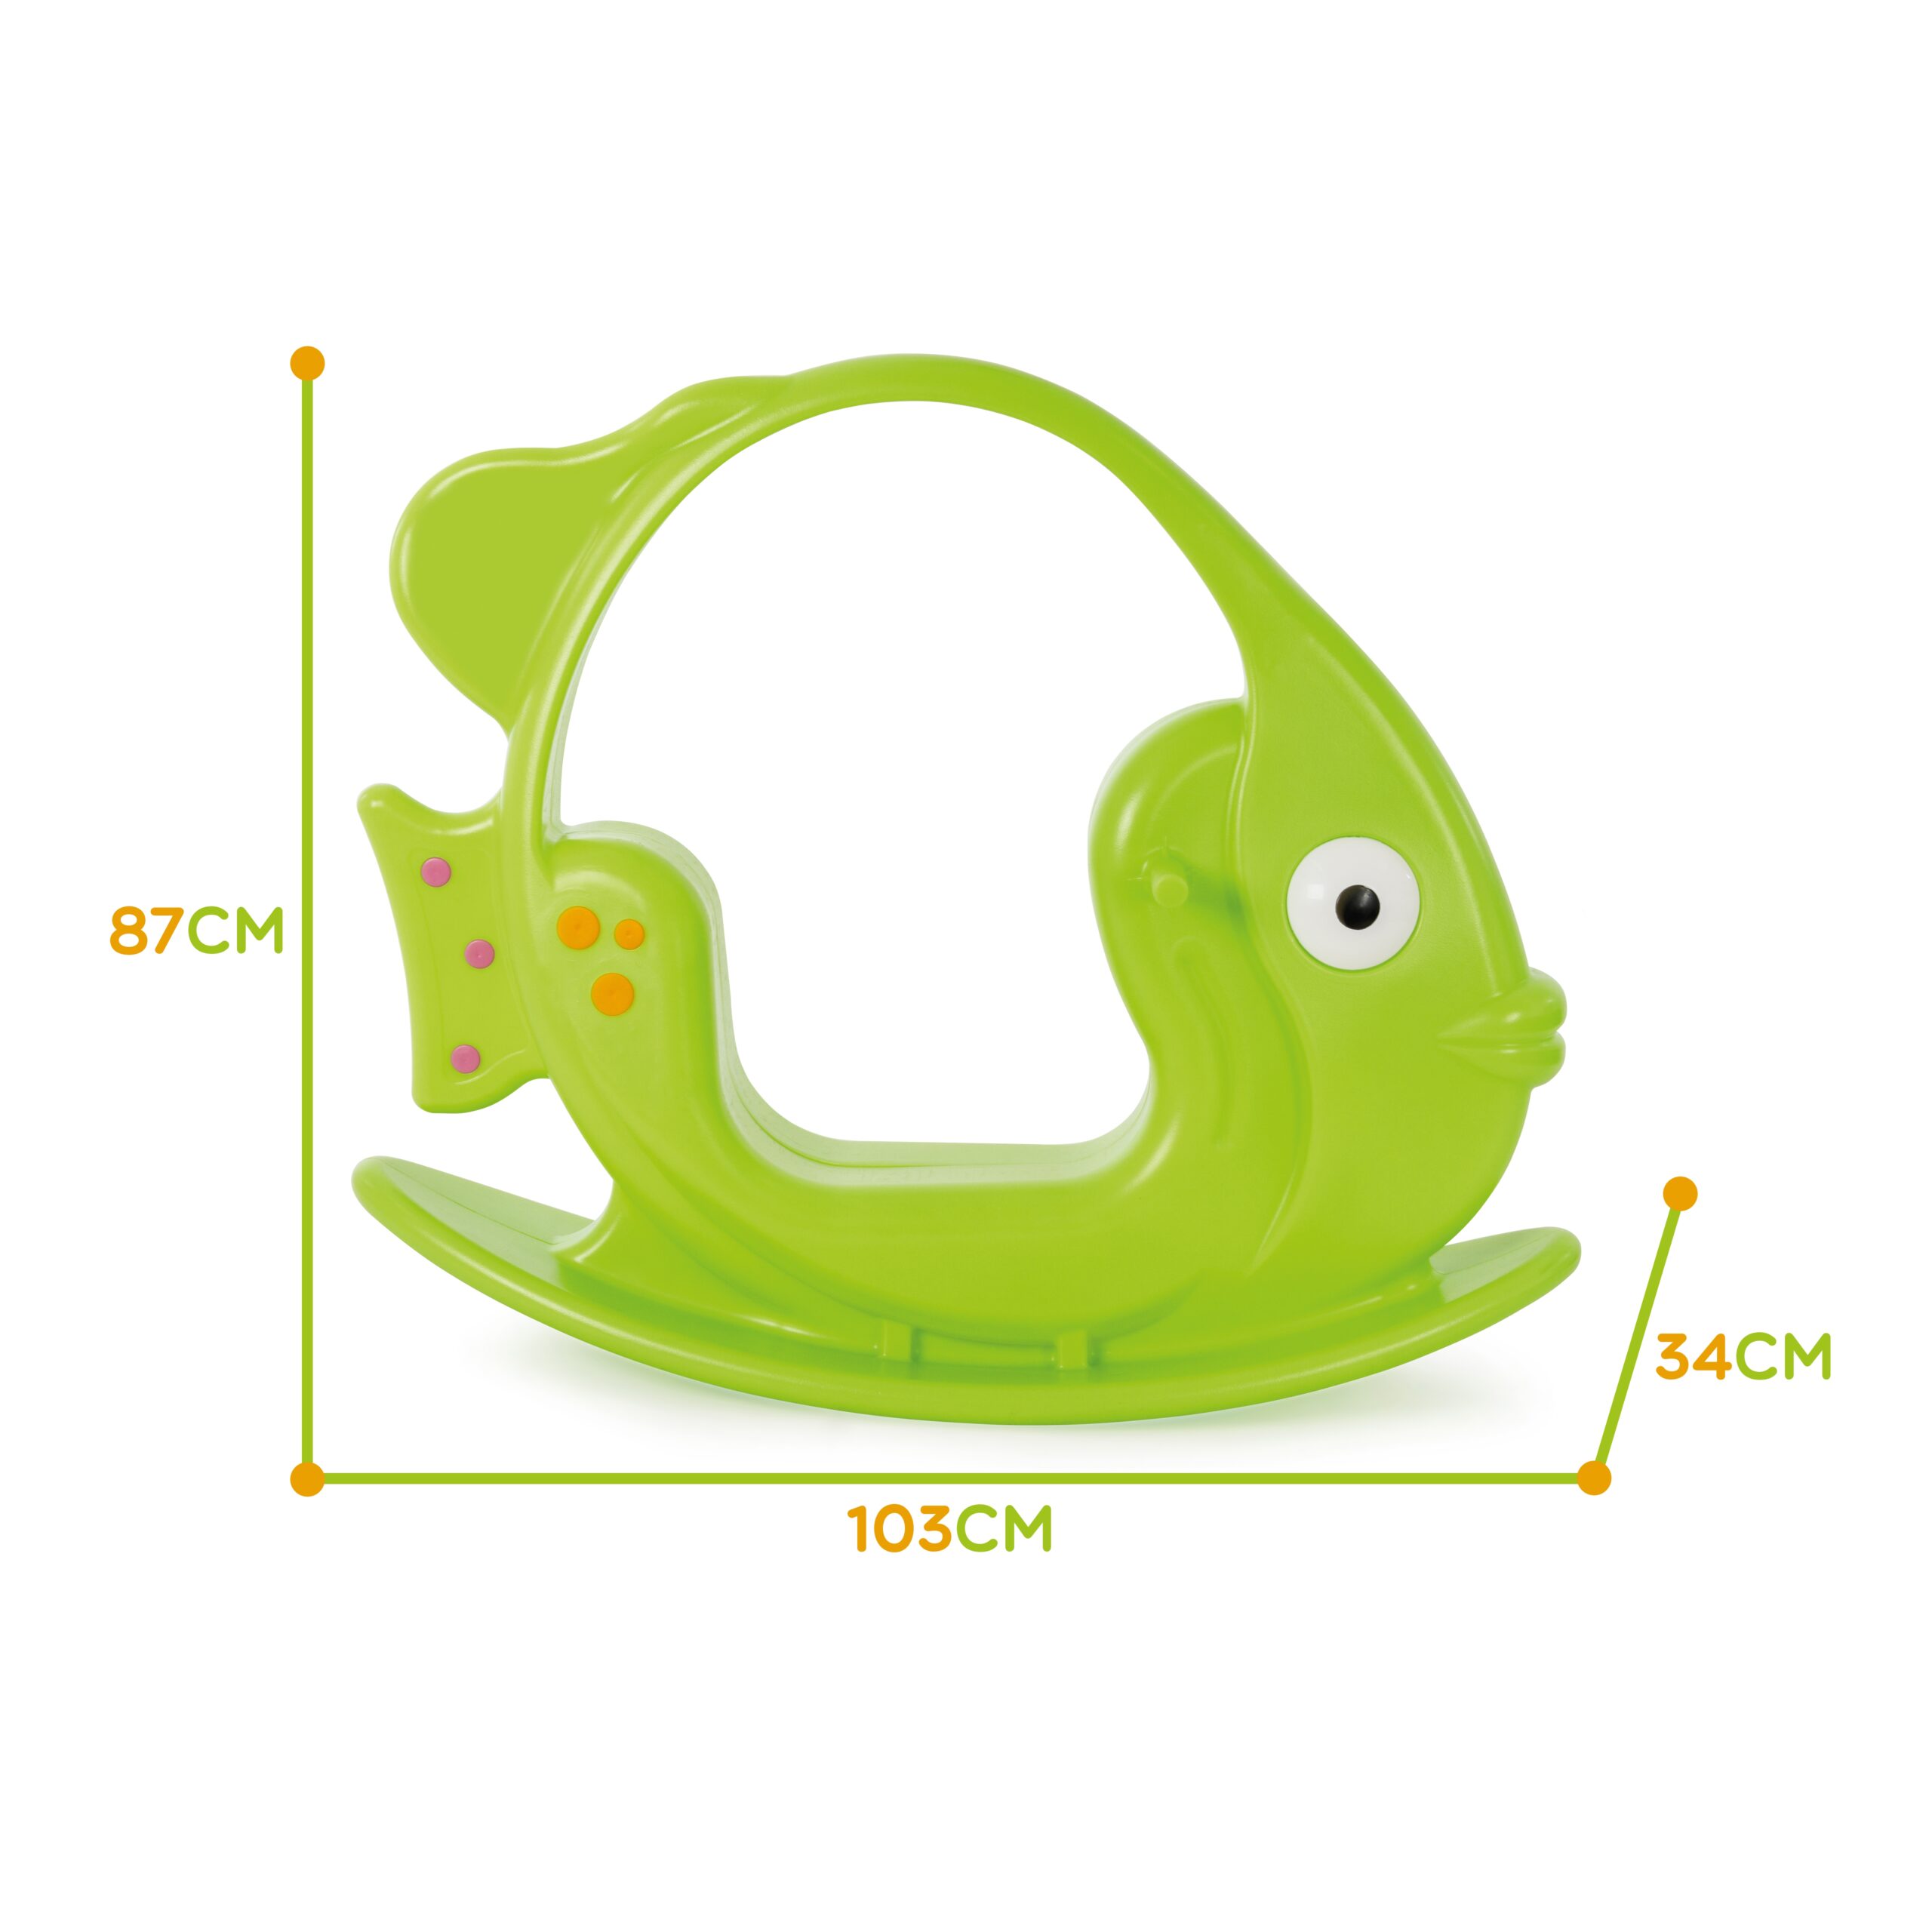 Bujak rybka zielona do 35 kg, zabawka dla dzieci, Woopie